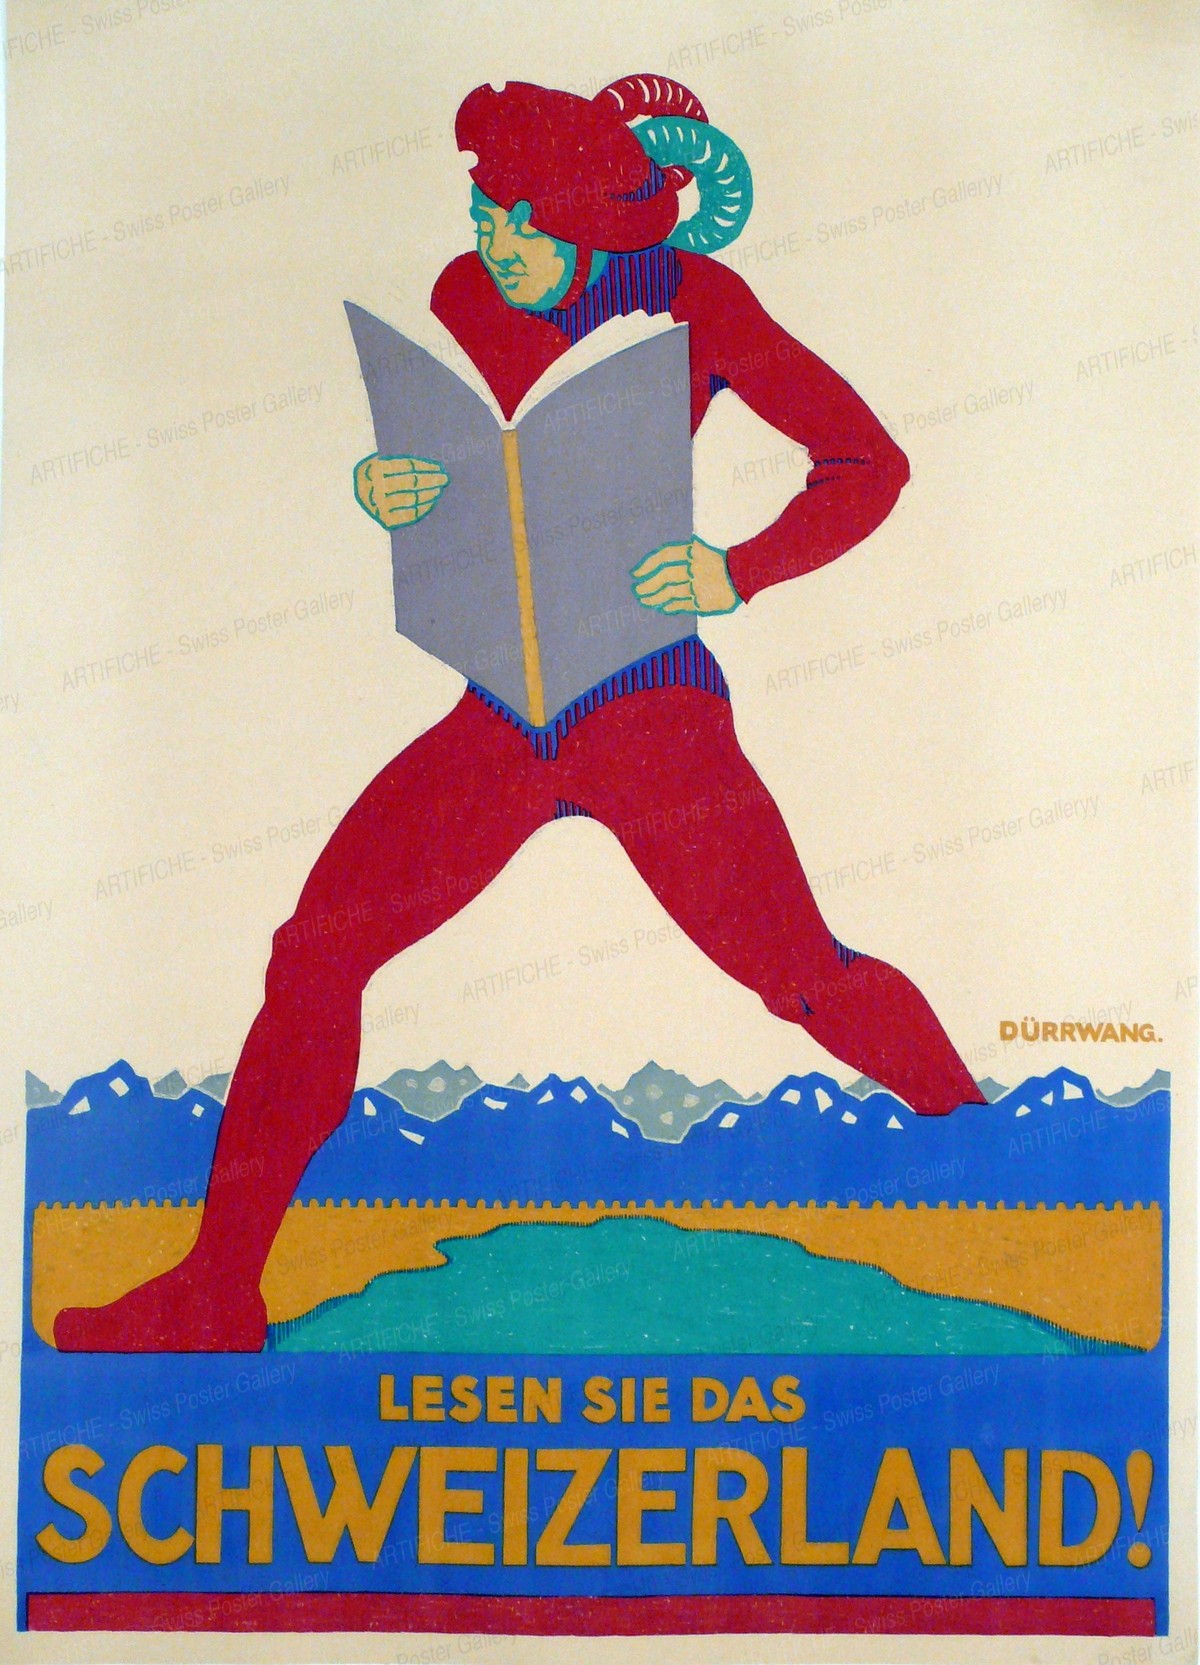 read „Das Schweizerland“, Rudolf Dürrwang